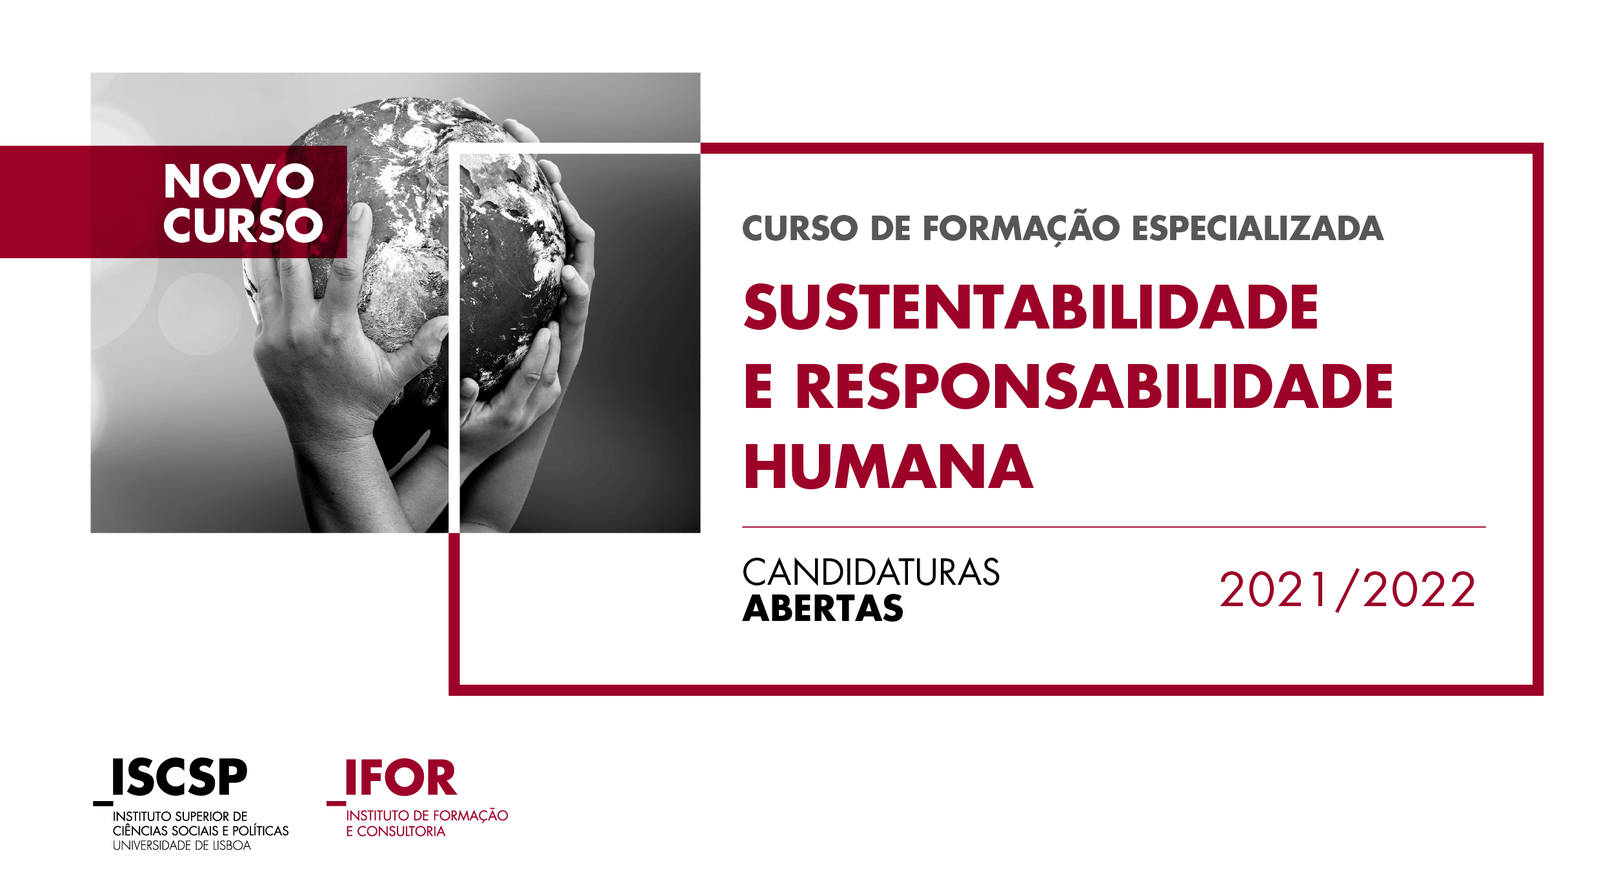 Nova formação especializada em Sustentabilidade e Responsabilidade Humana Fonte: ISCSP